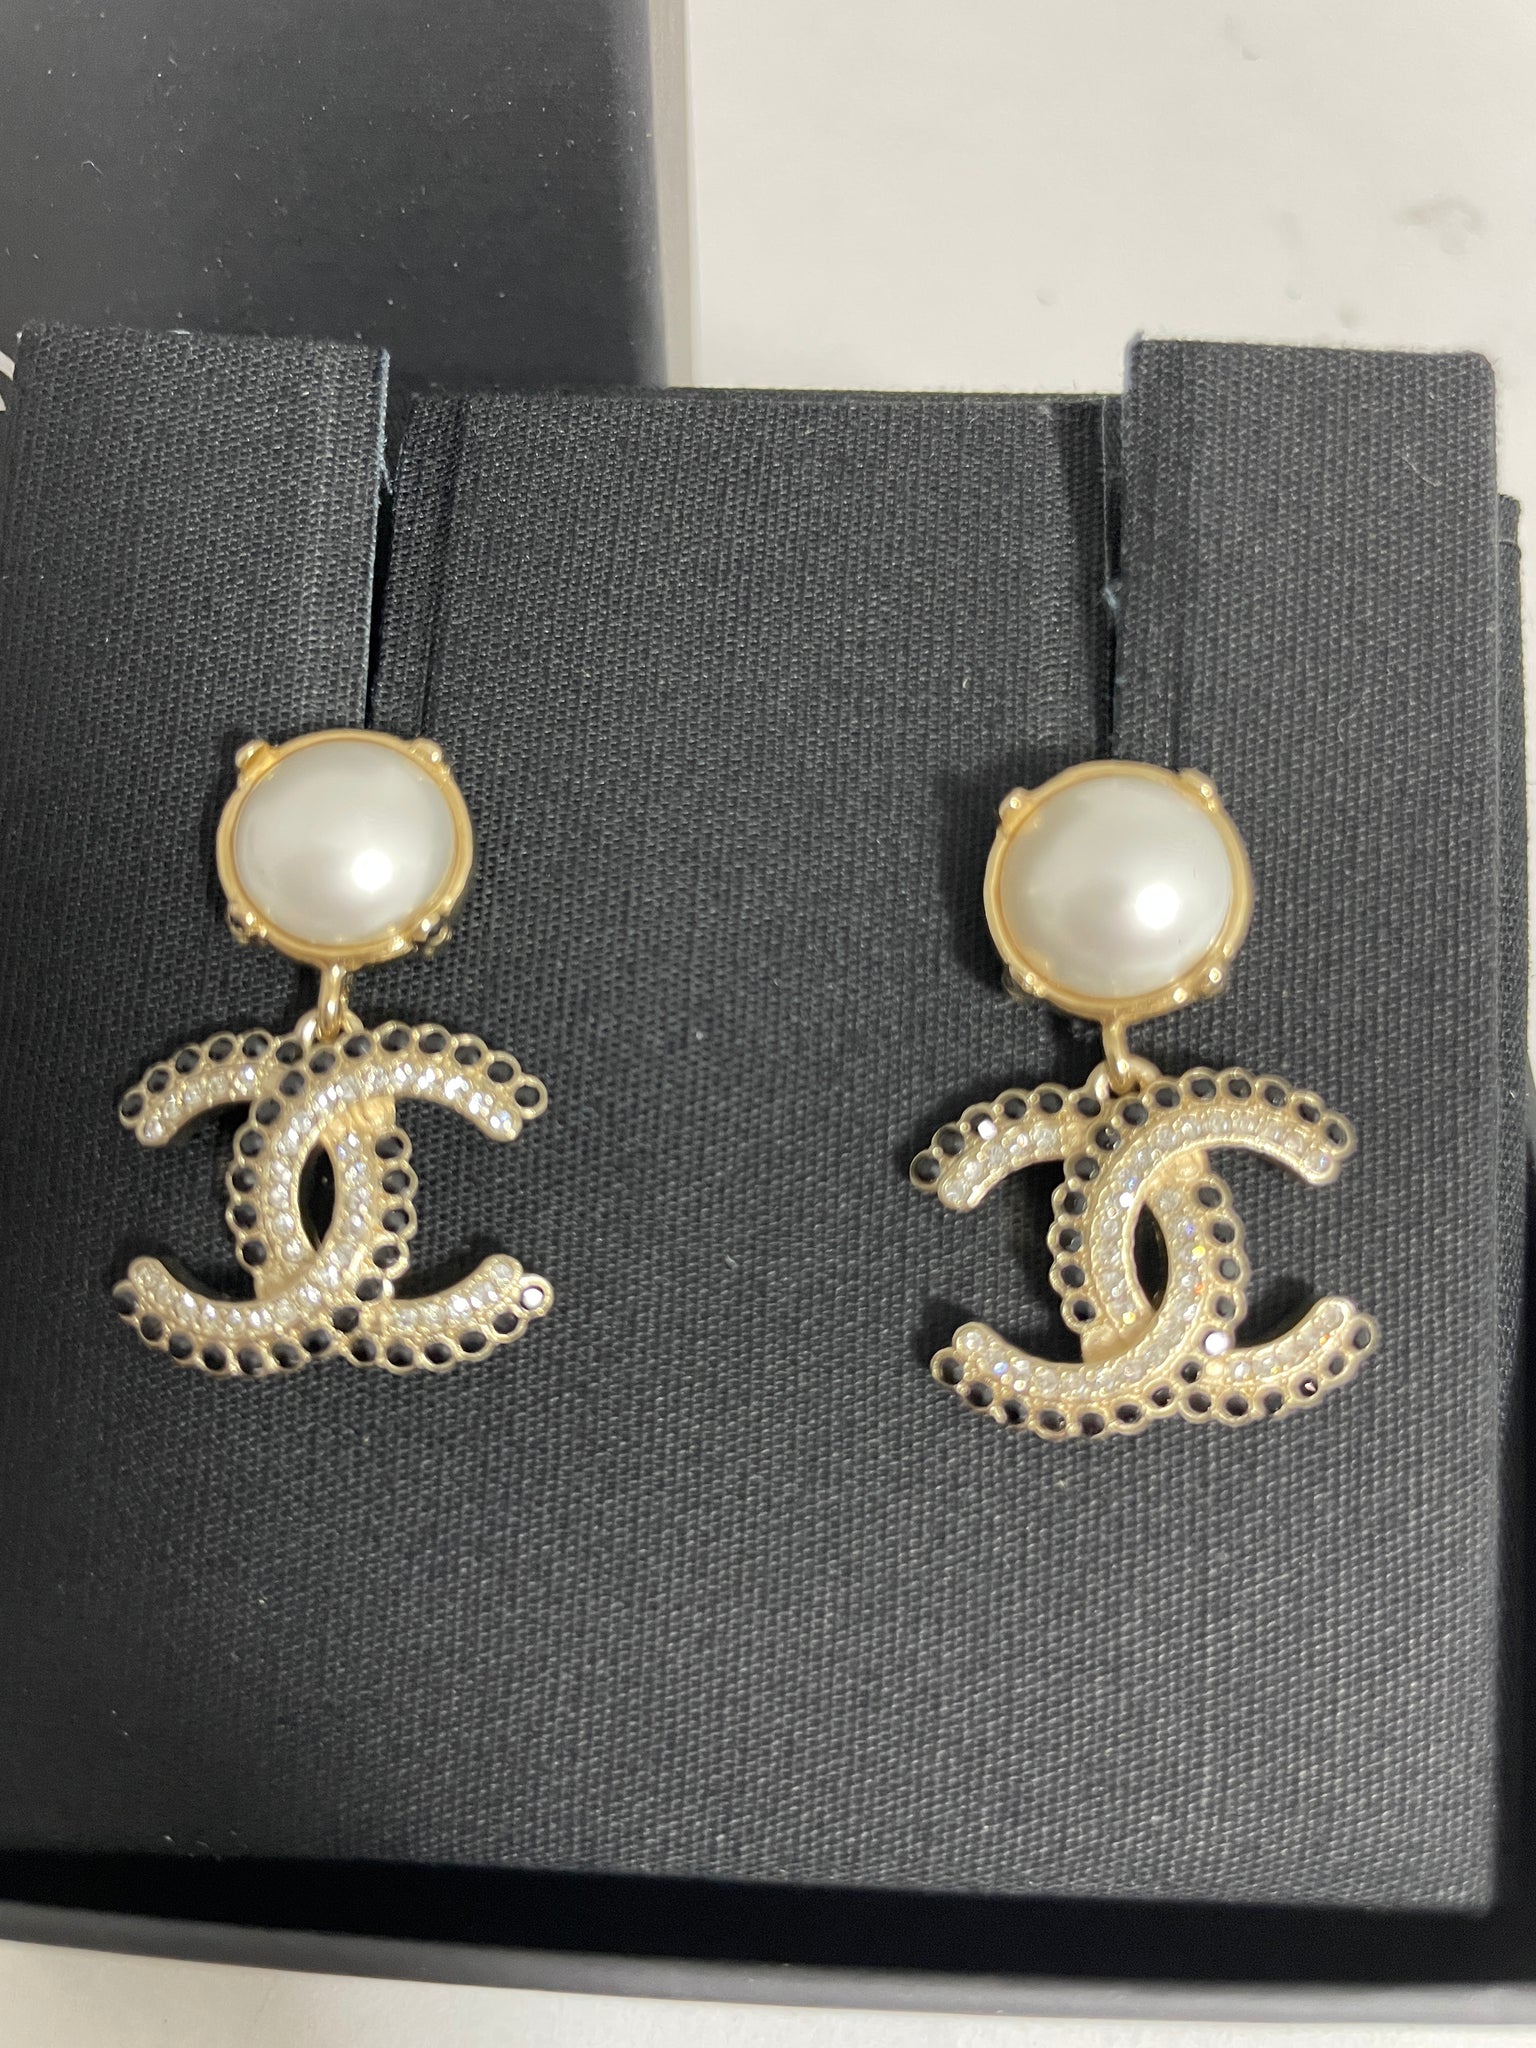 CHANEL Pearl Drop CC Earrings